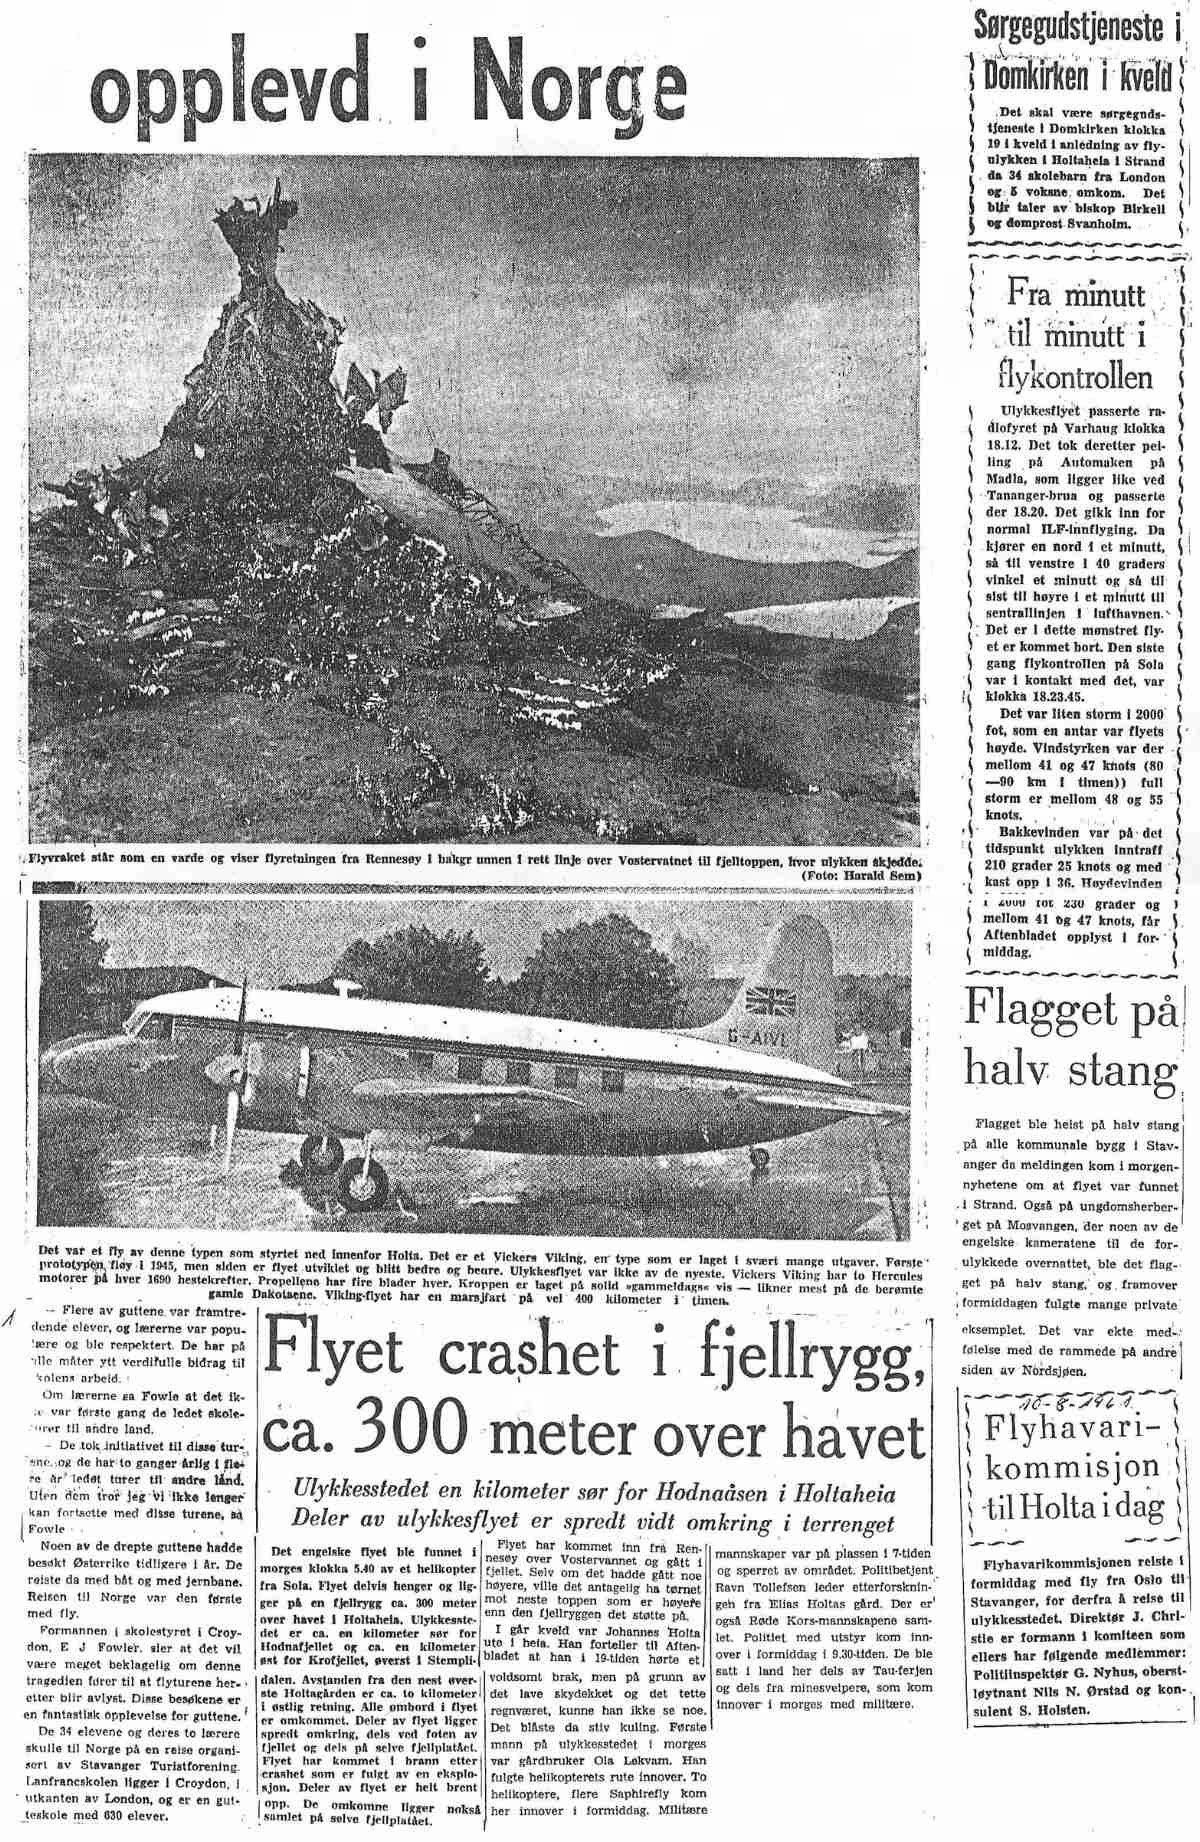 flyulykke 2